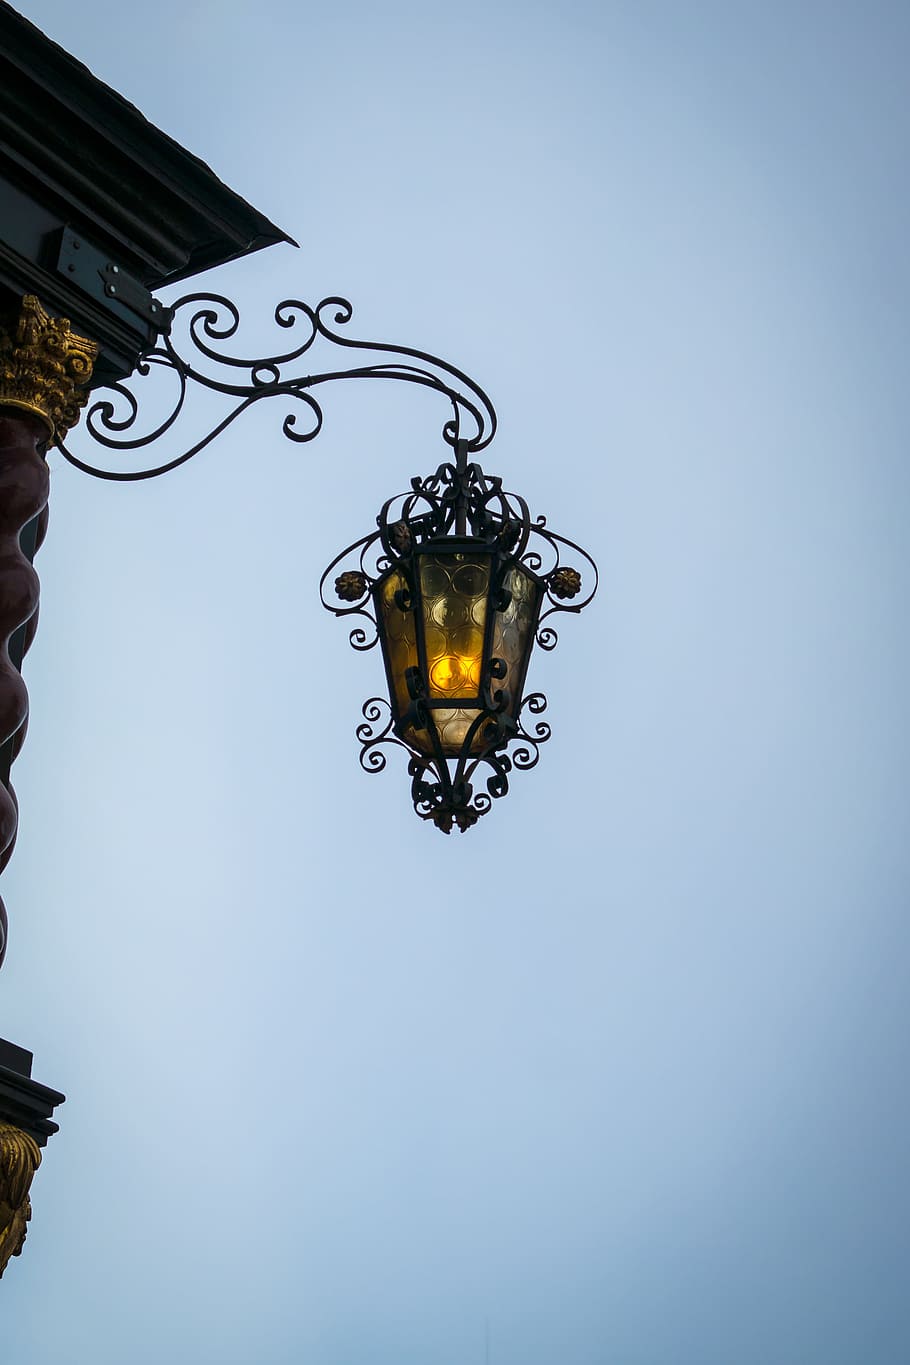 Lanterna, Lâmpada, Luz, Antiguidade, Velho, iluminação, poste, iluminação pública histórica, iluminação ao ar livre, elétrica Lâmpada